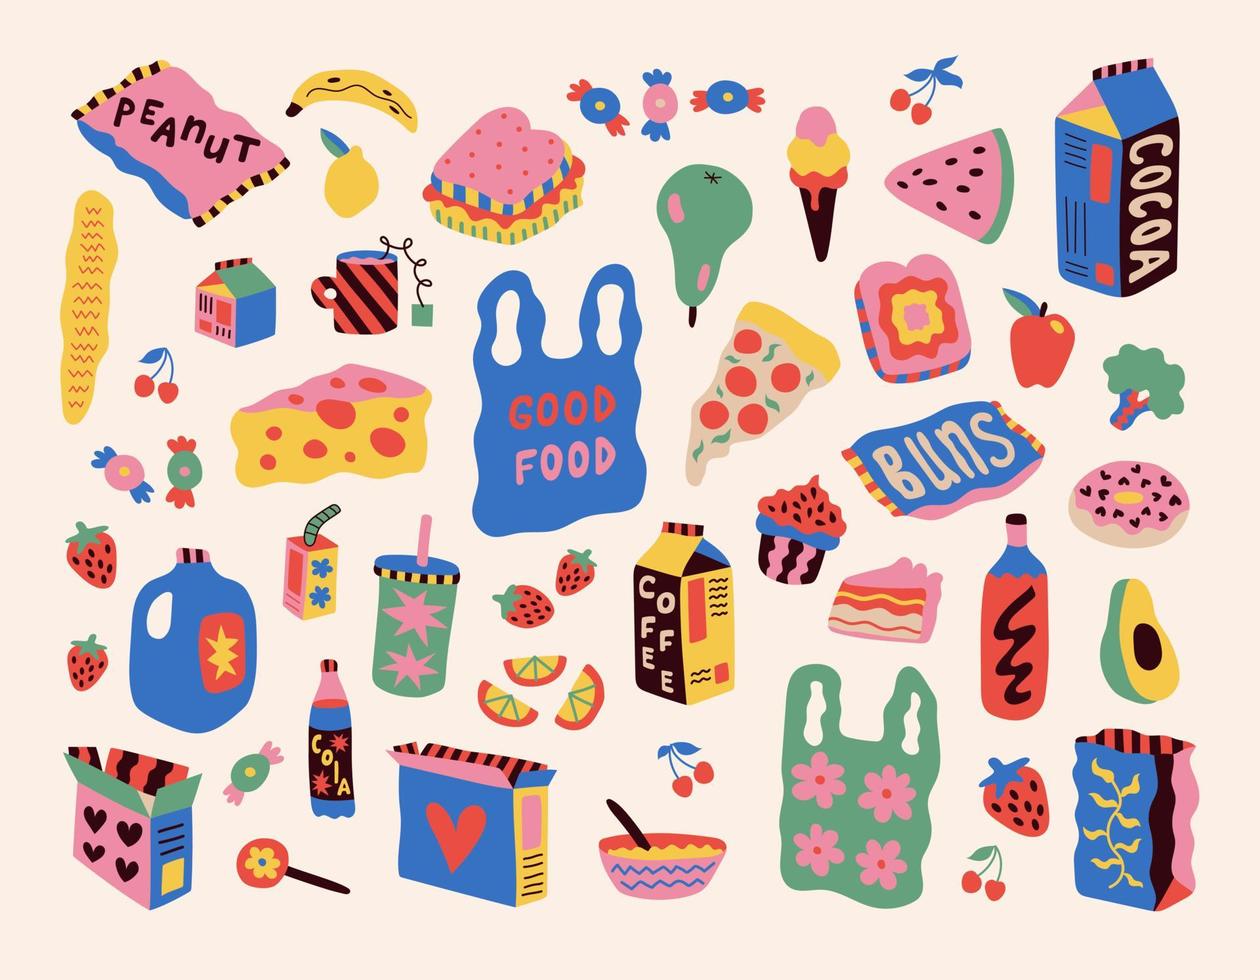 impostato di adesivi con disegnato cibo. disegno stile. vario colorato bevande, cupcakes, ciambelle, frutta, caffè, fanans. mano disegnato moda vettore illustrazione.